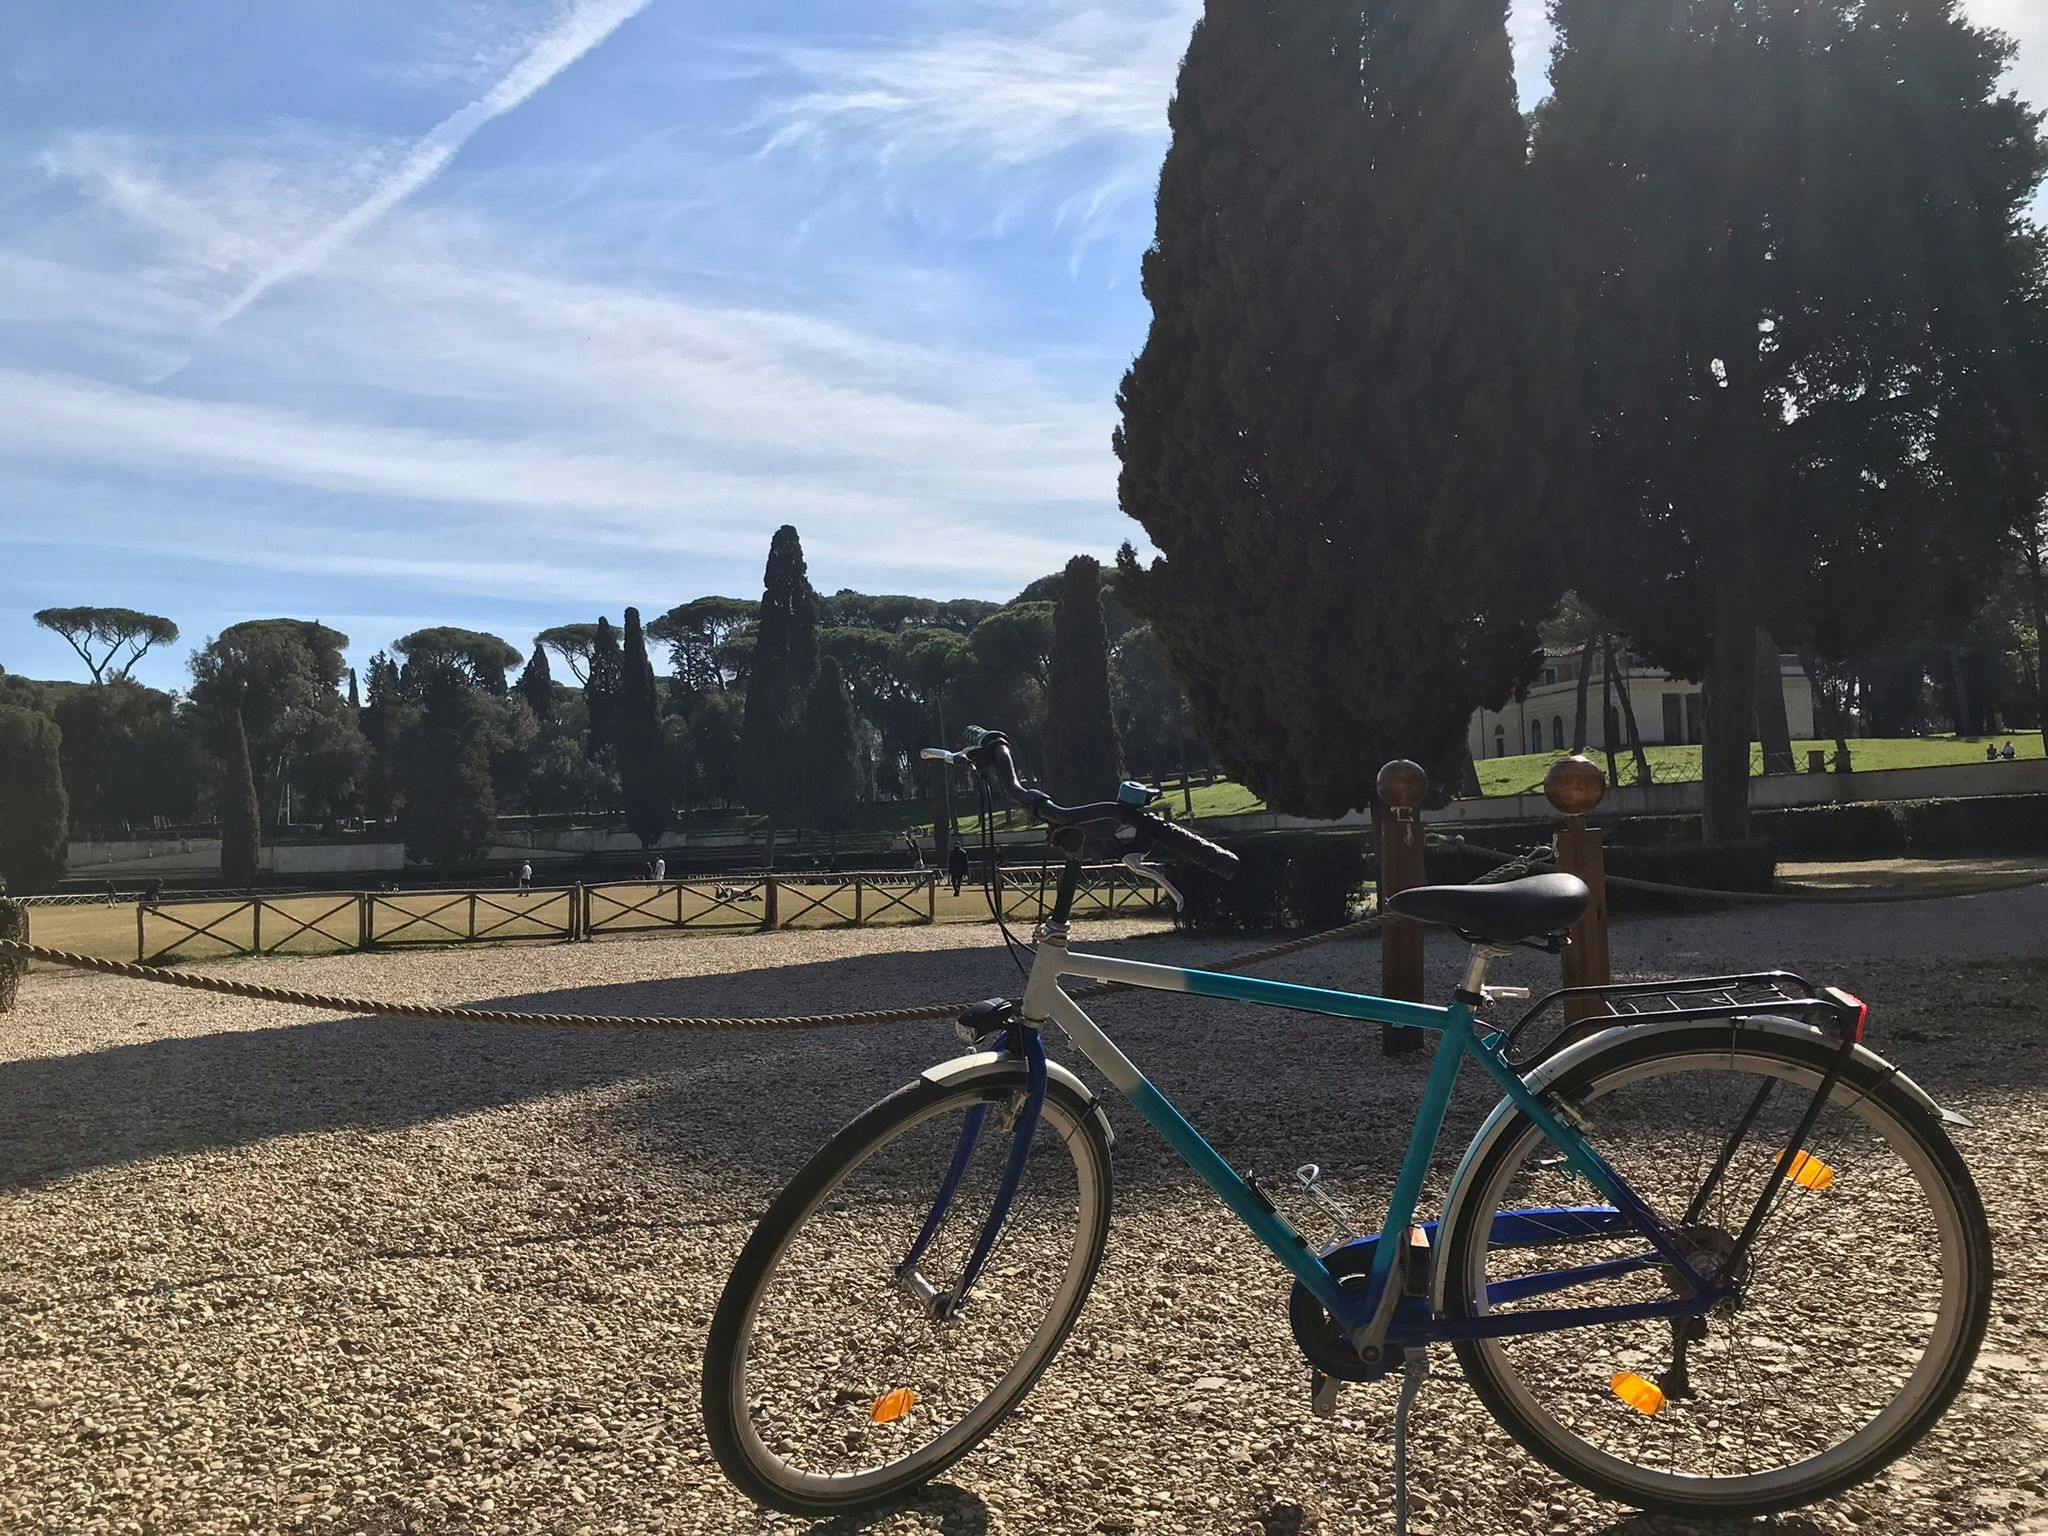 Villa Borghese bike tour in Rome Musement